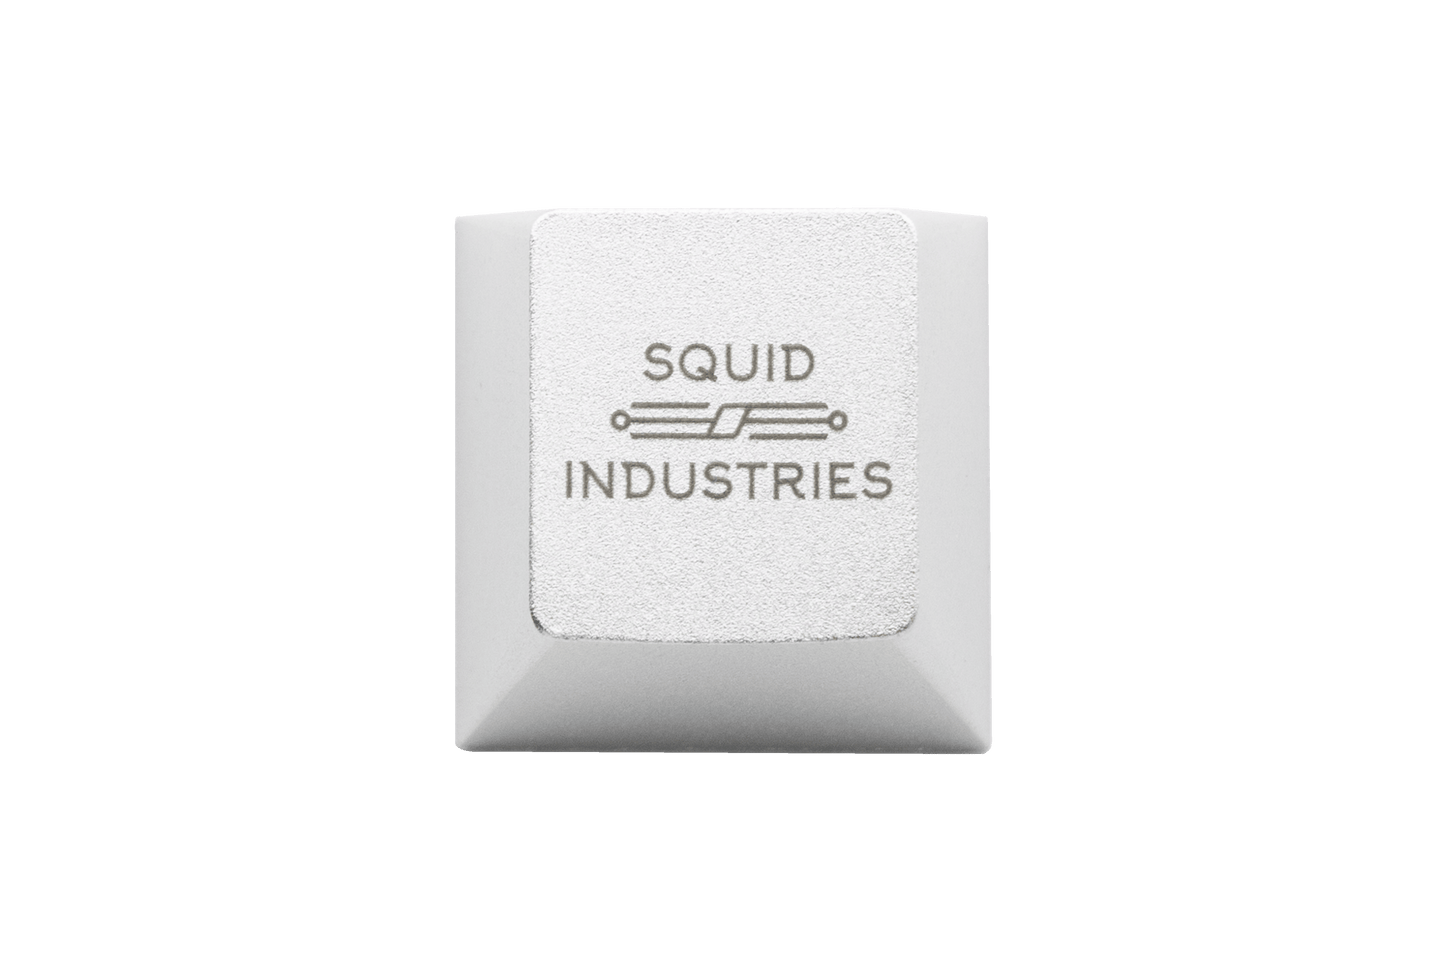 Squid Industries Keycap silver logo